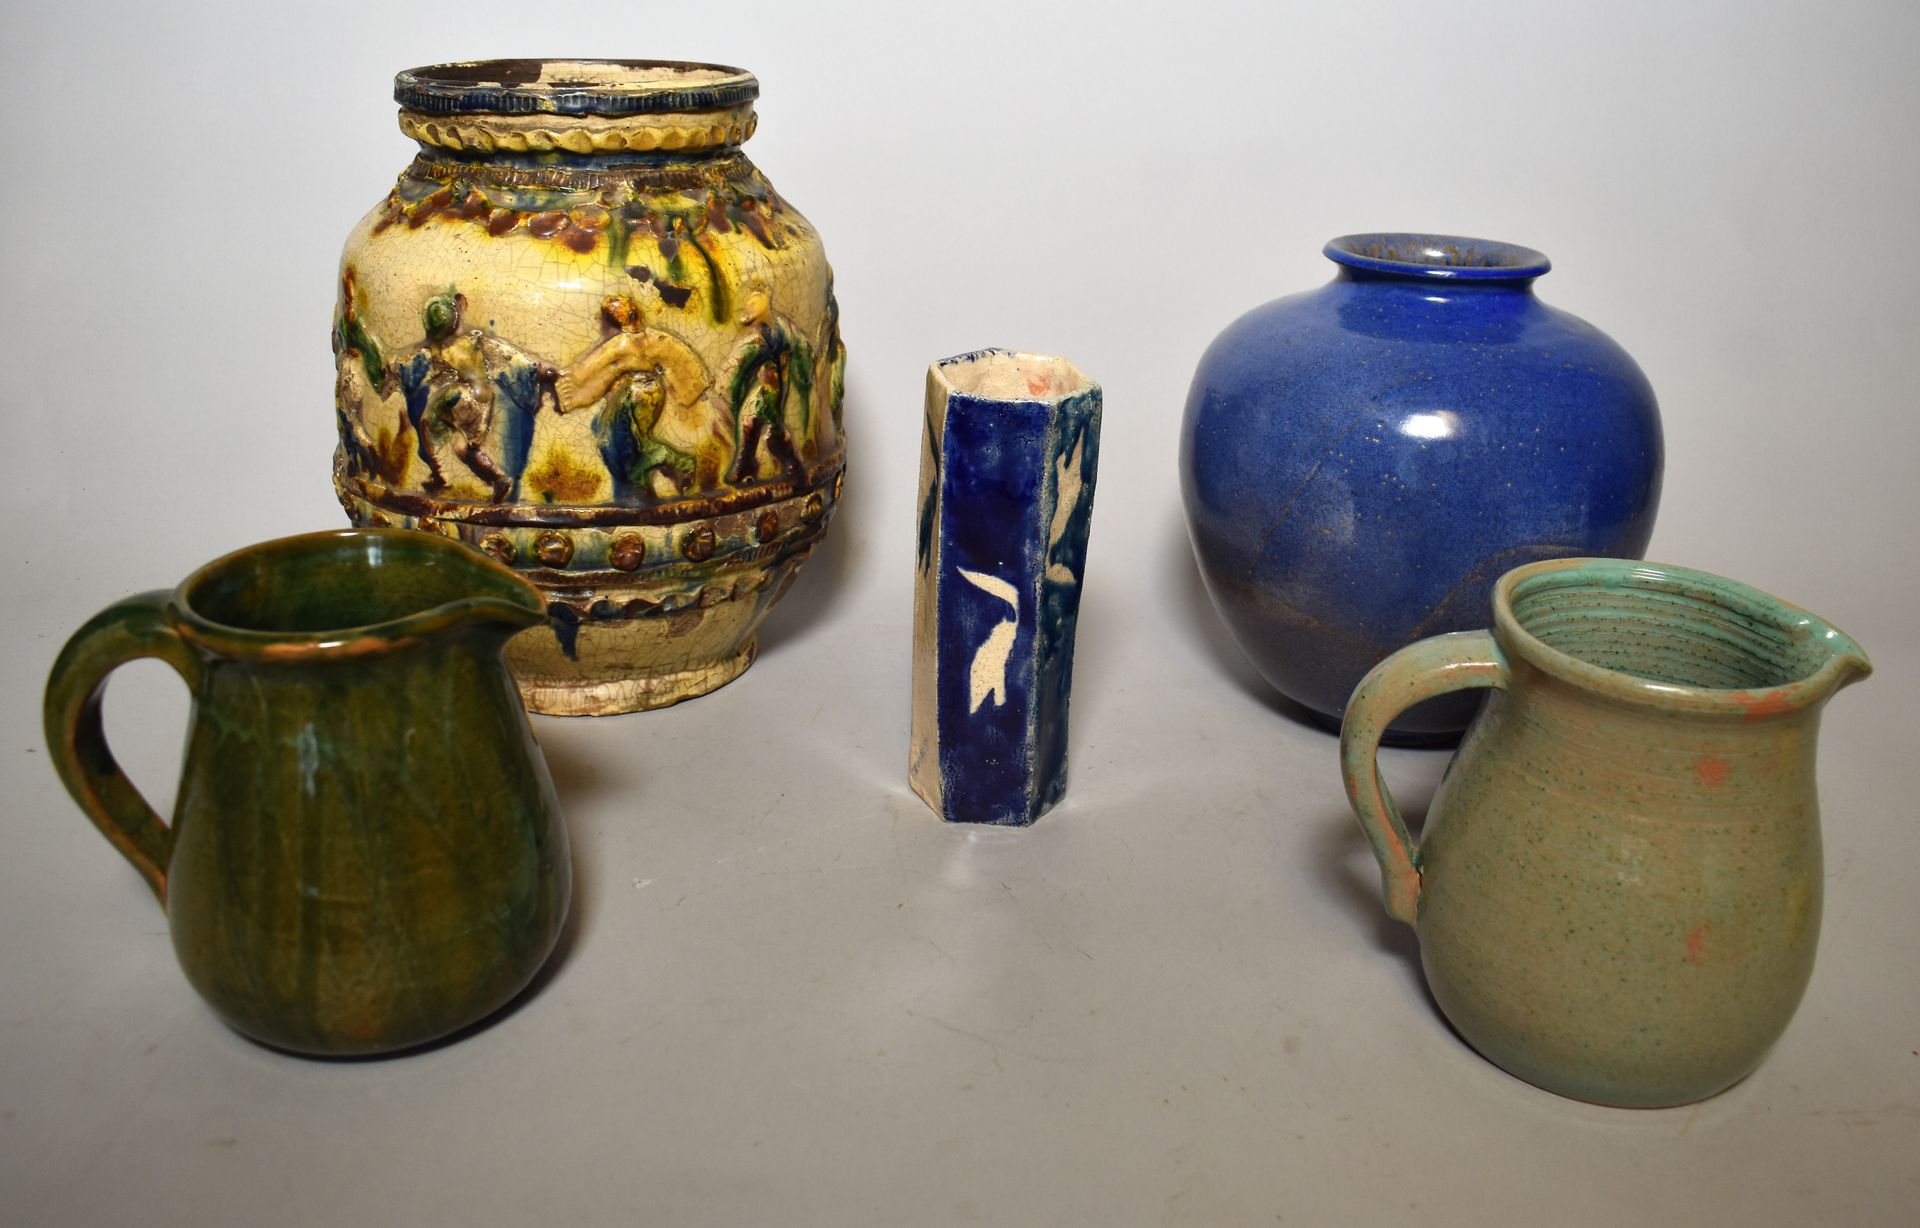 Null PATUREL: 蓝色釉面陶器的花瓶球和绿色釉面陶器的两把 BROCS。

增加：签名为劳伦斯的釉面陶器SOLIFLORE和罗马尼亚陶器的卵形花瓶，上&hellip;